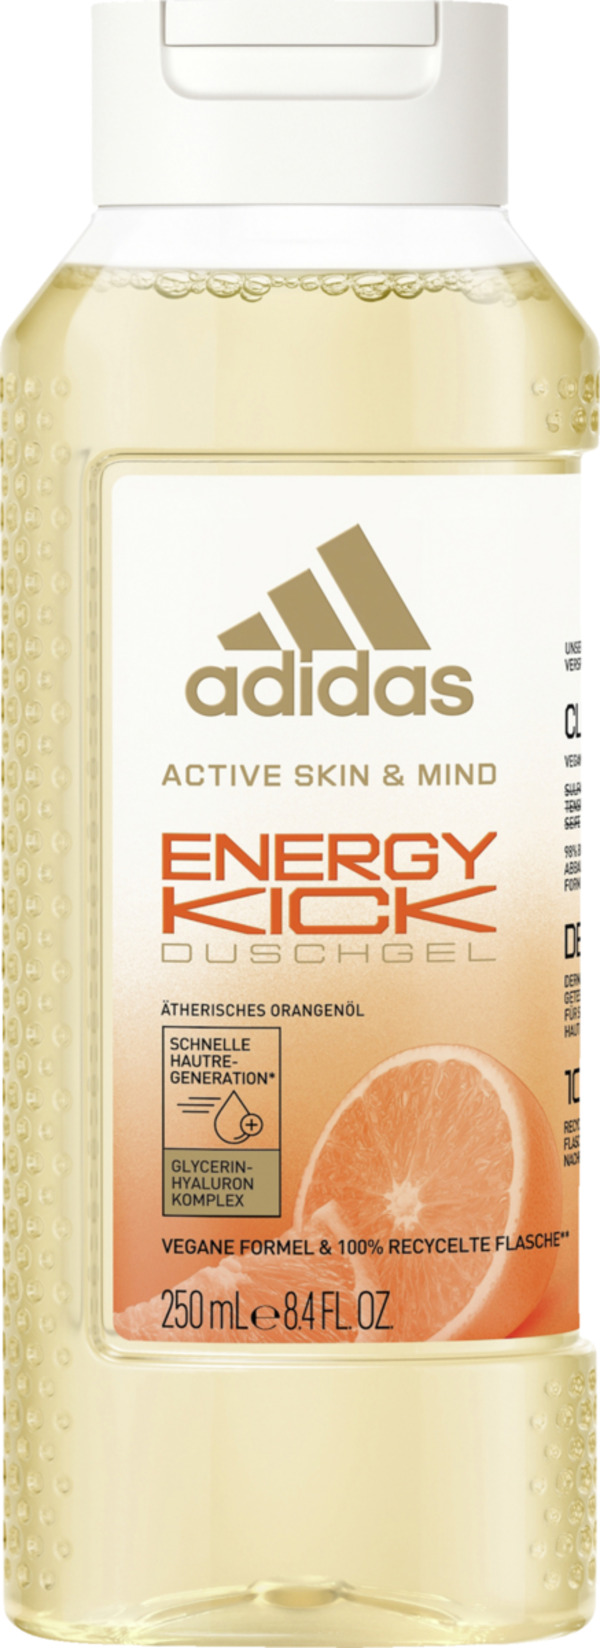 Bild 1 von adidas Active Skin & Mind Energy Kick Duschgel